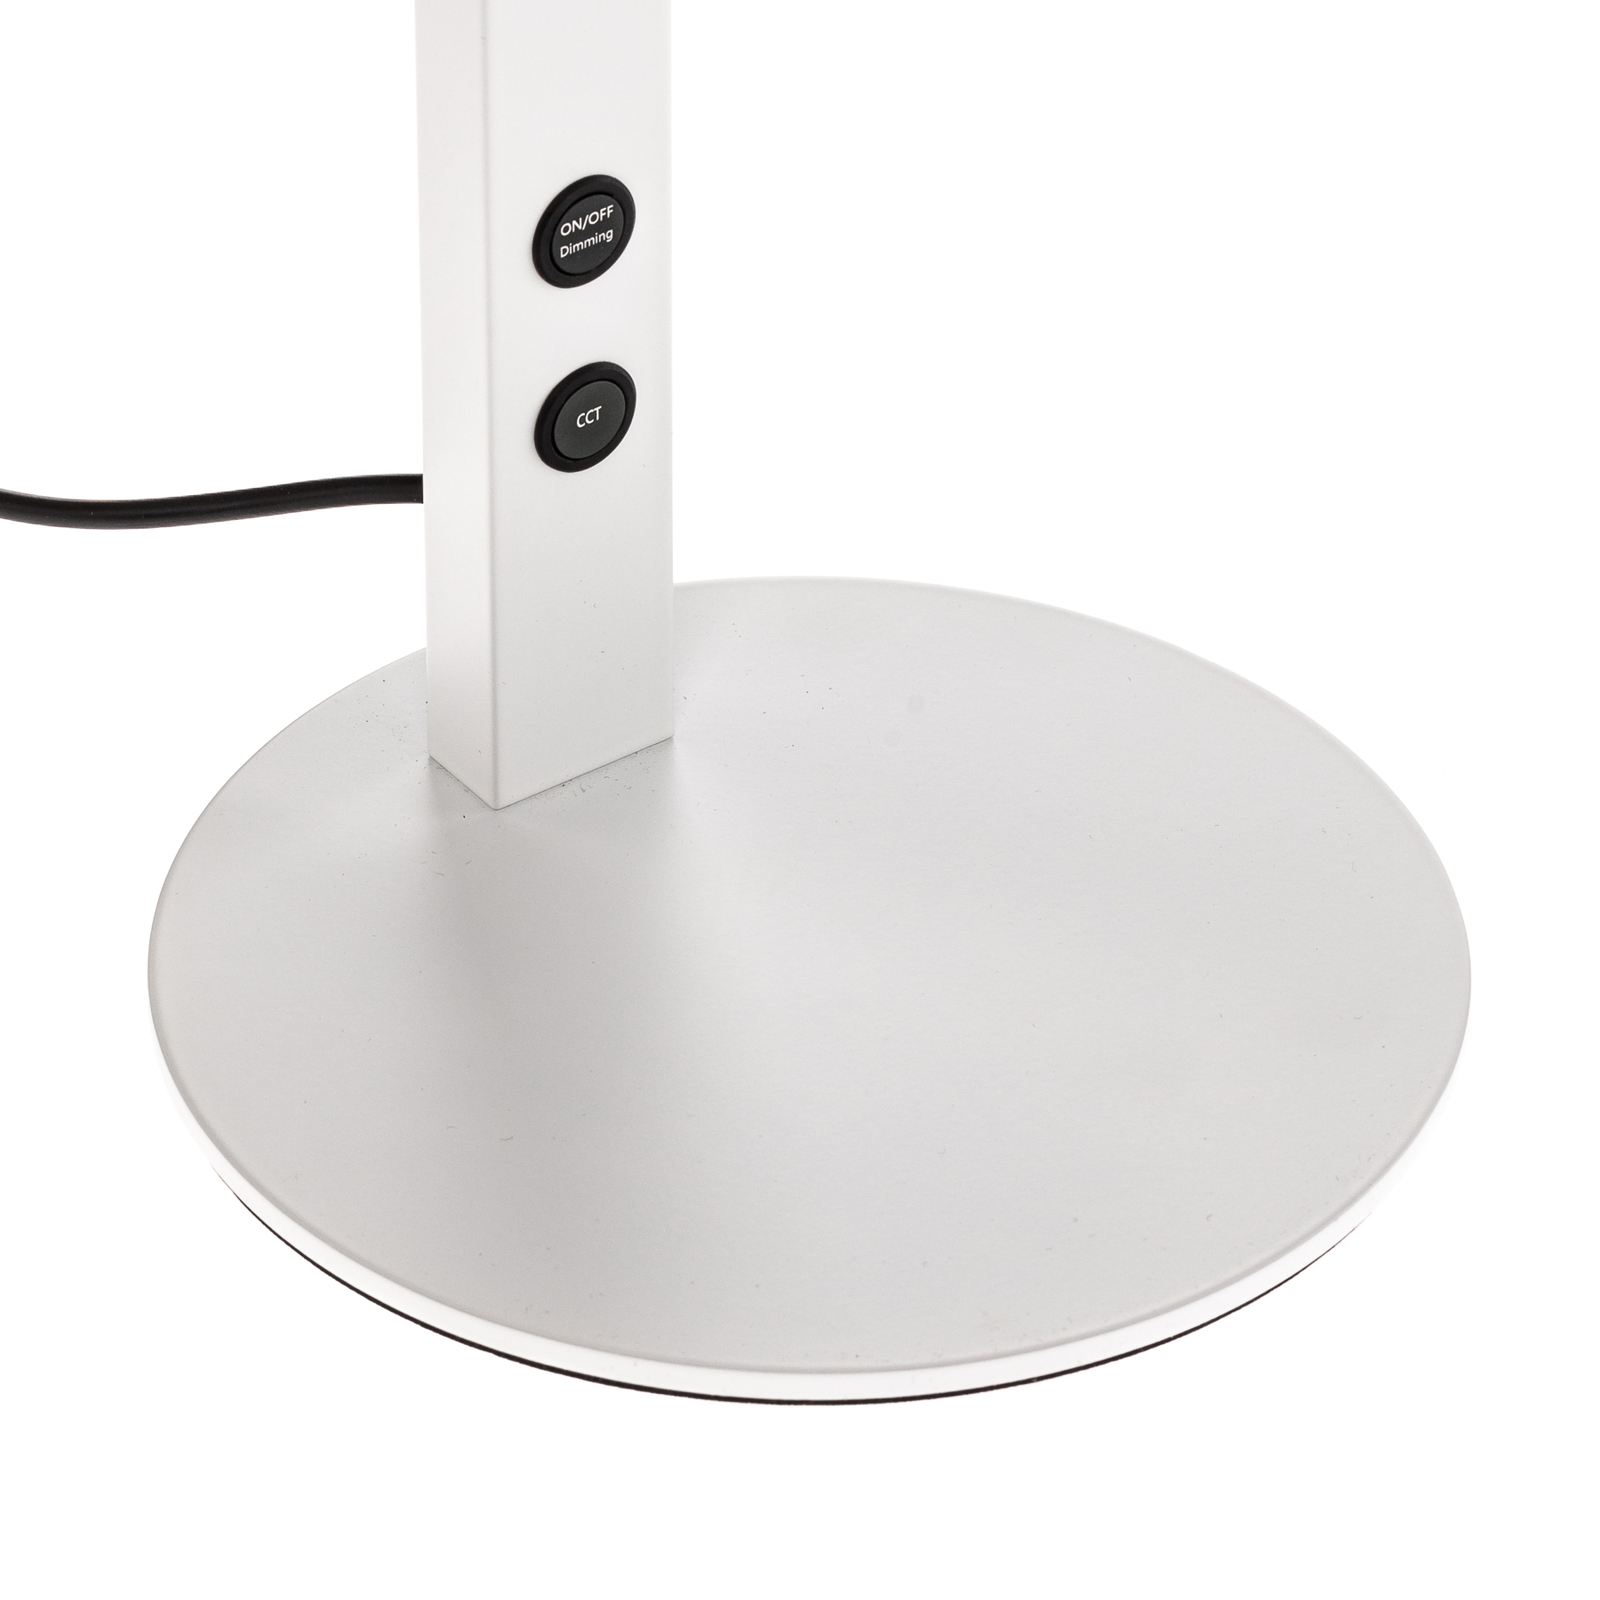 Lampe de bureau LED Ideal avec variateur, blanche